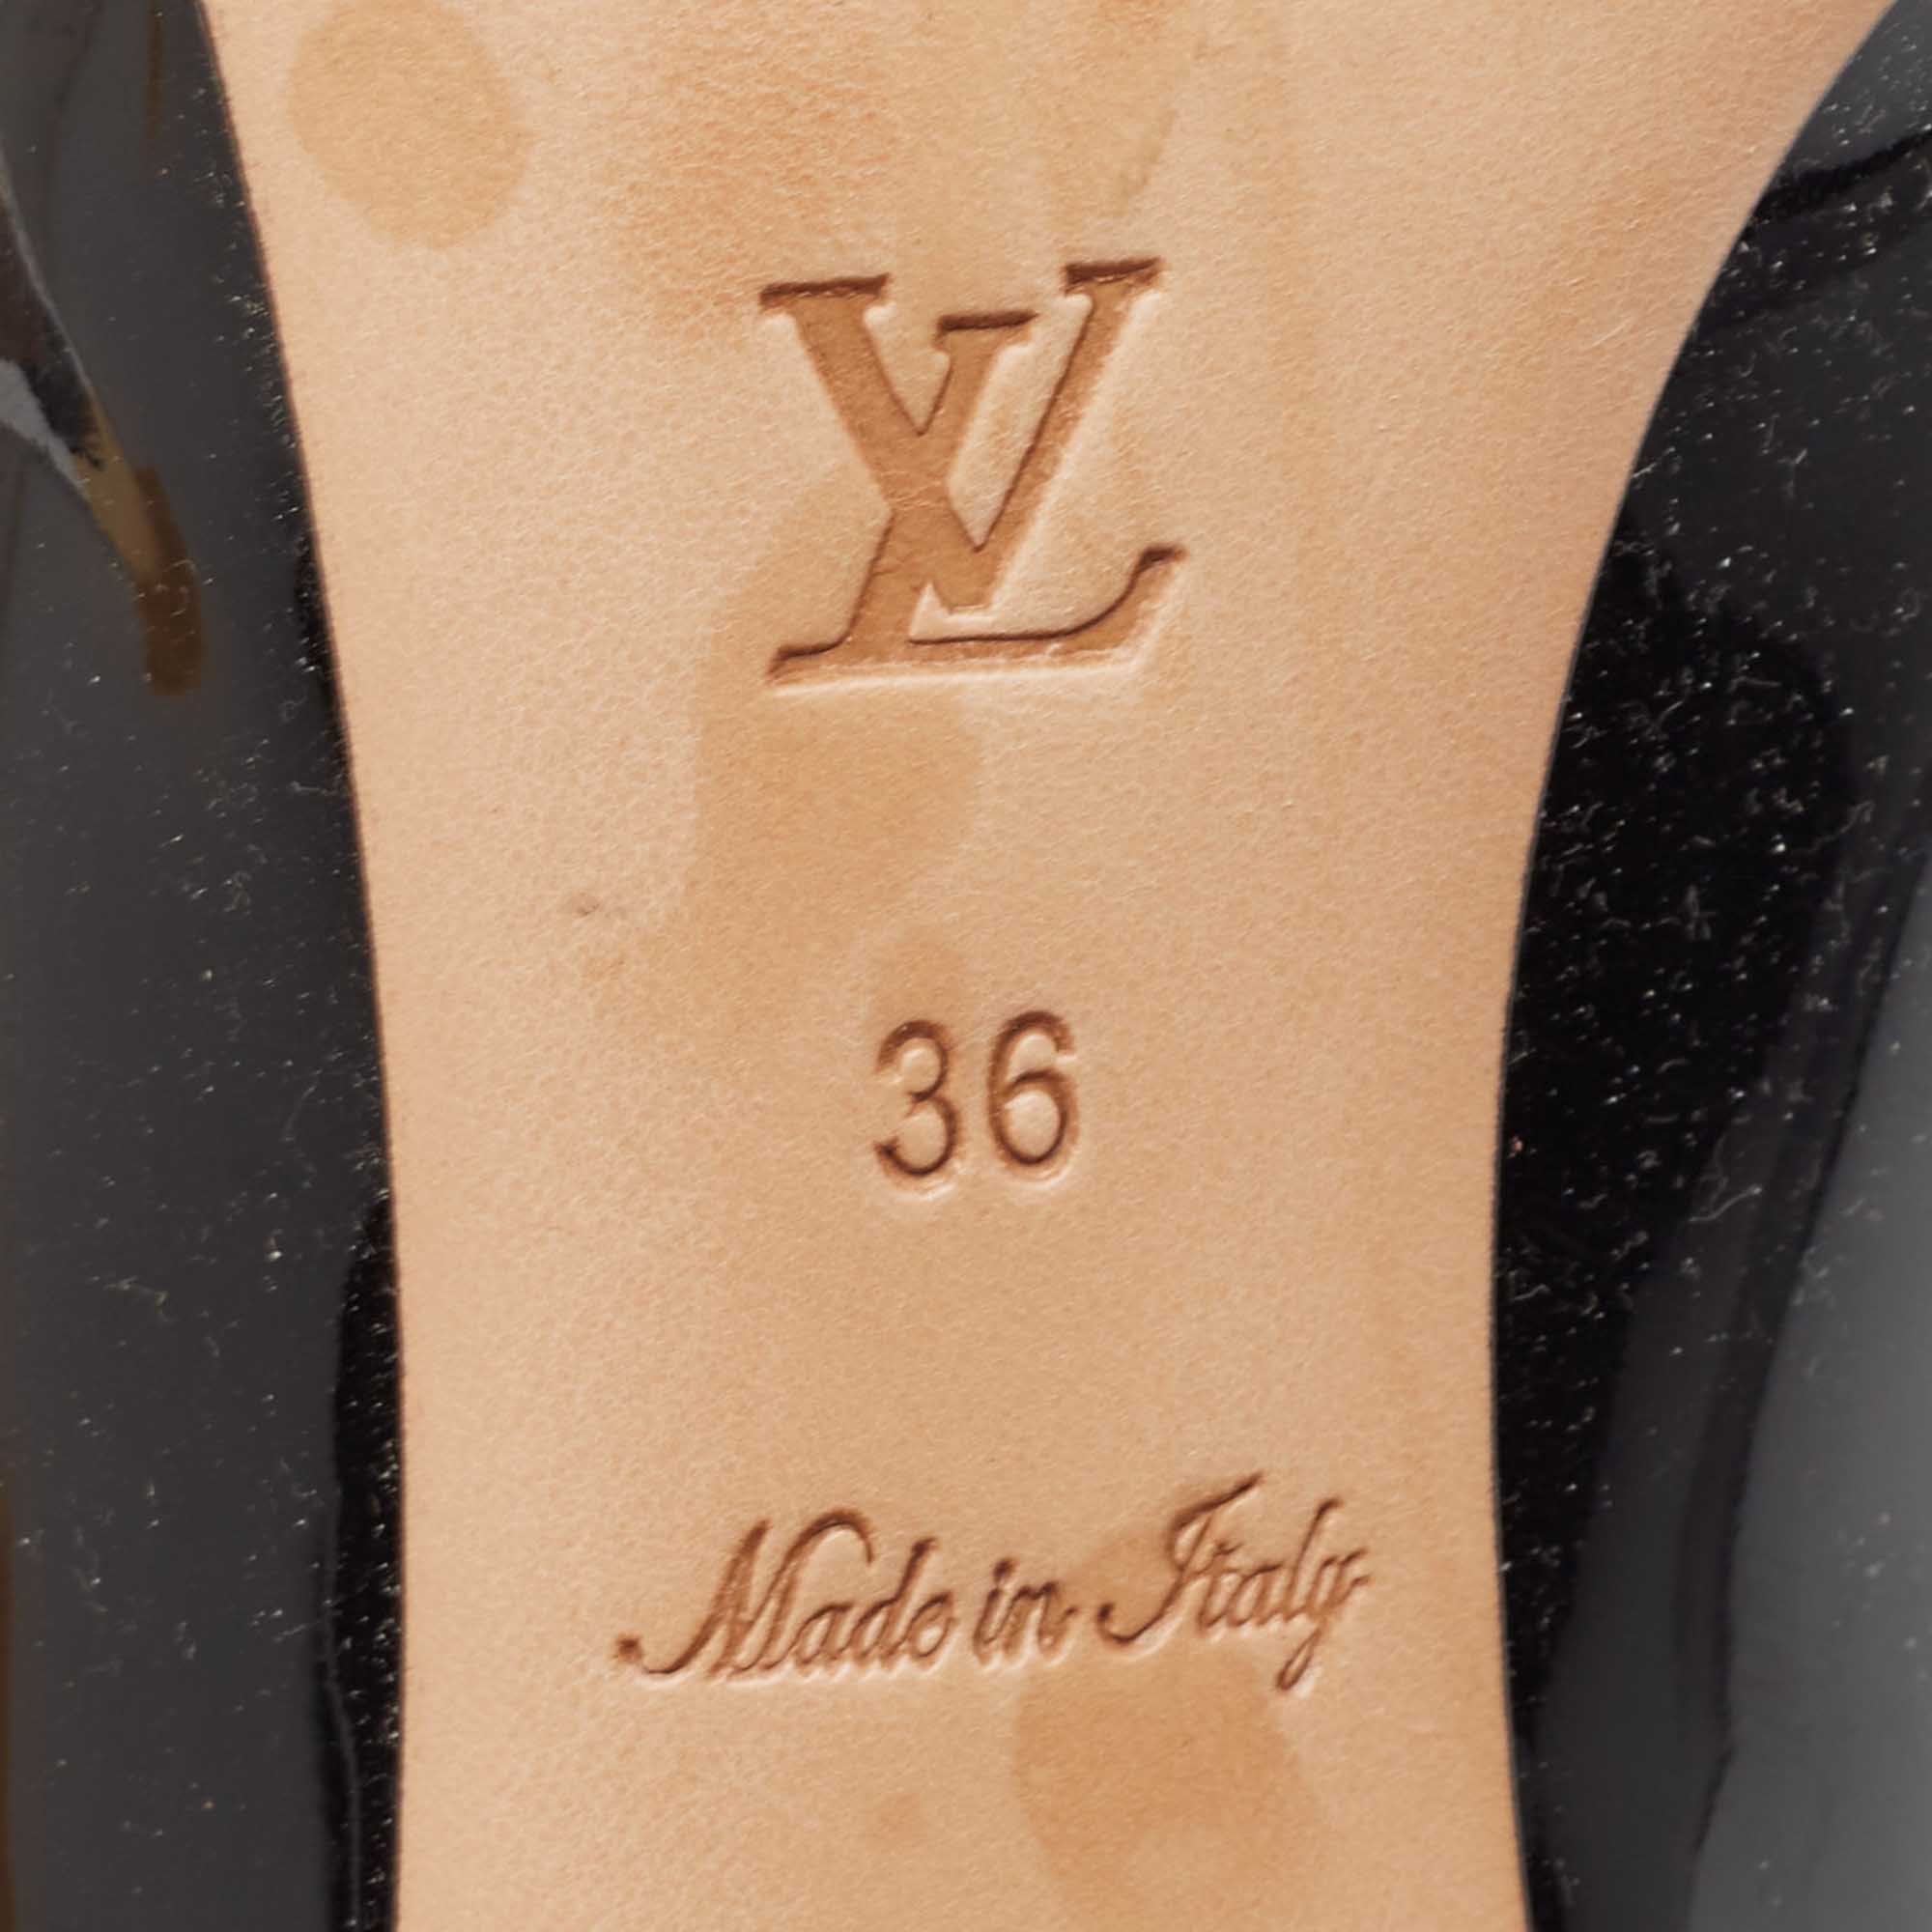 Louis Vuitton Black Patent Leather Gold Plate Block Heel Pumps Size 36